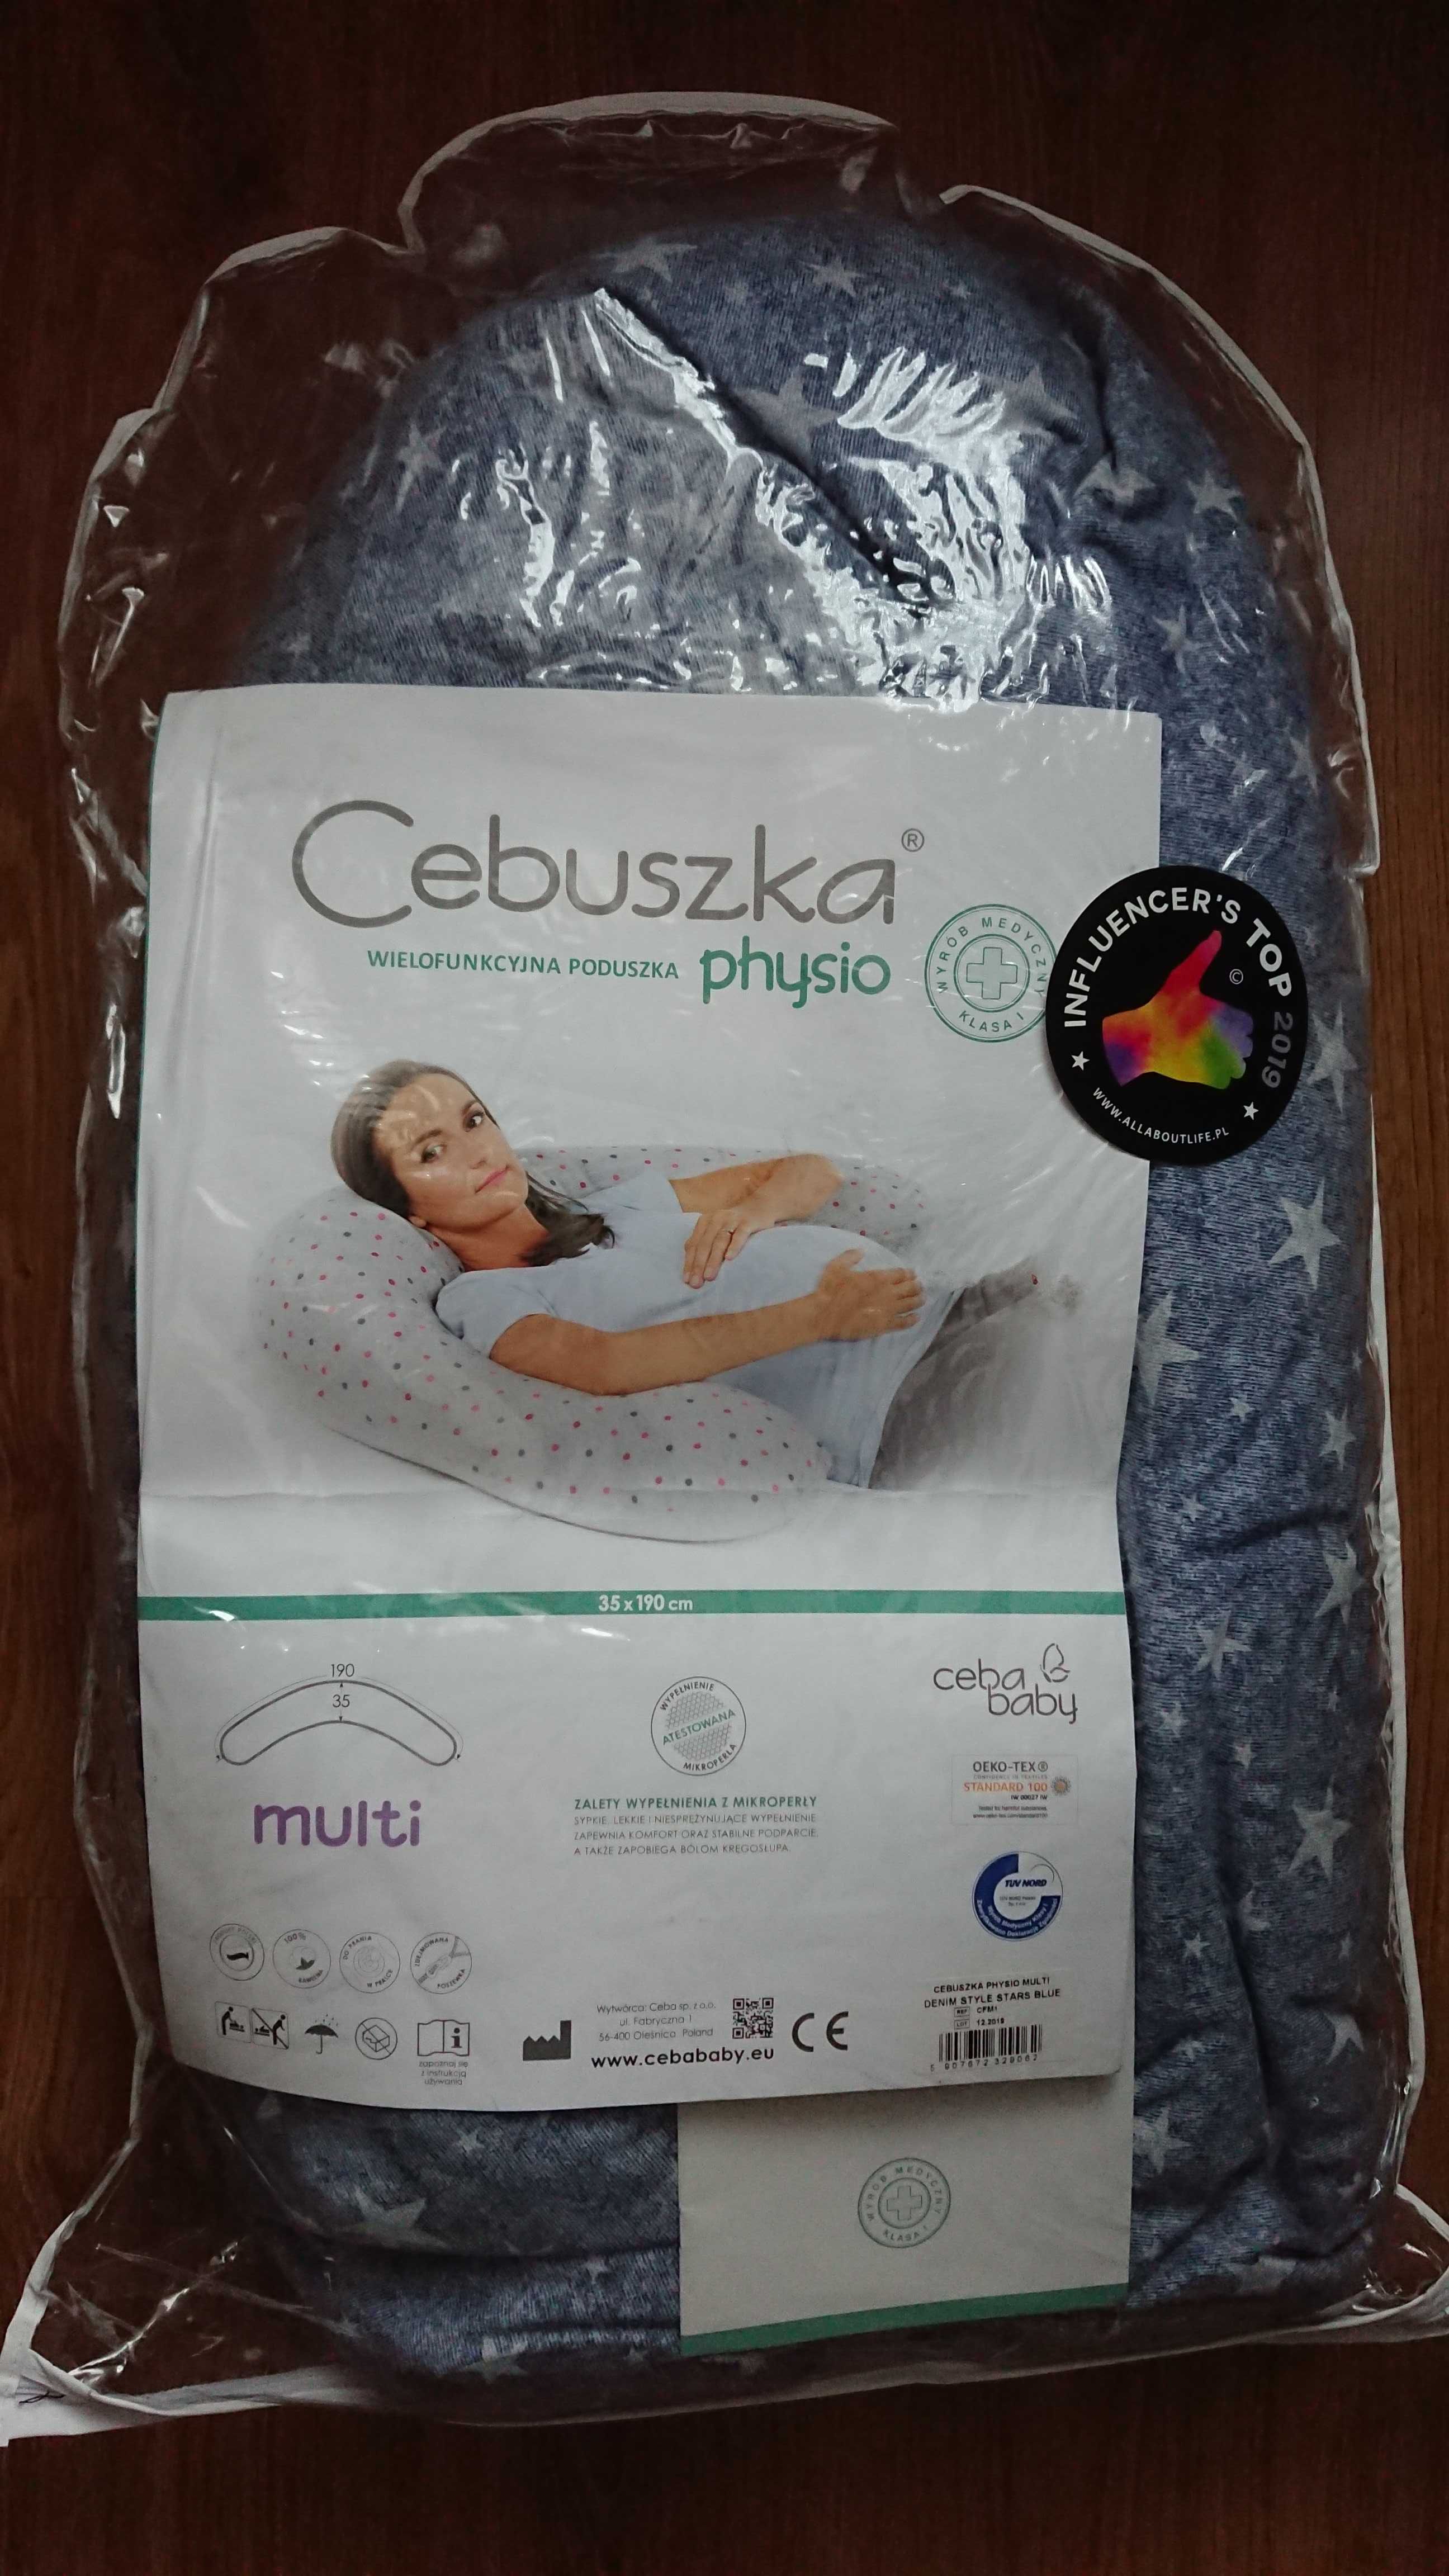 Cebuszka Physio Multi,poduszka ciążowa,dla kobiet w ciąży,do karmienia